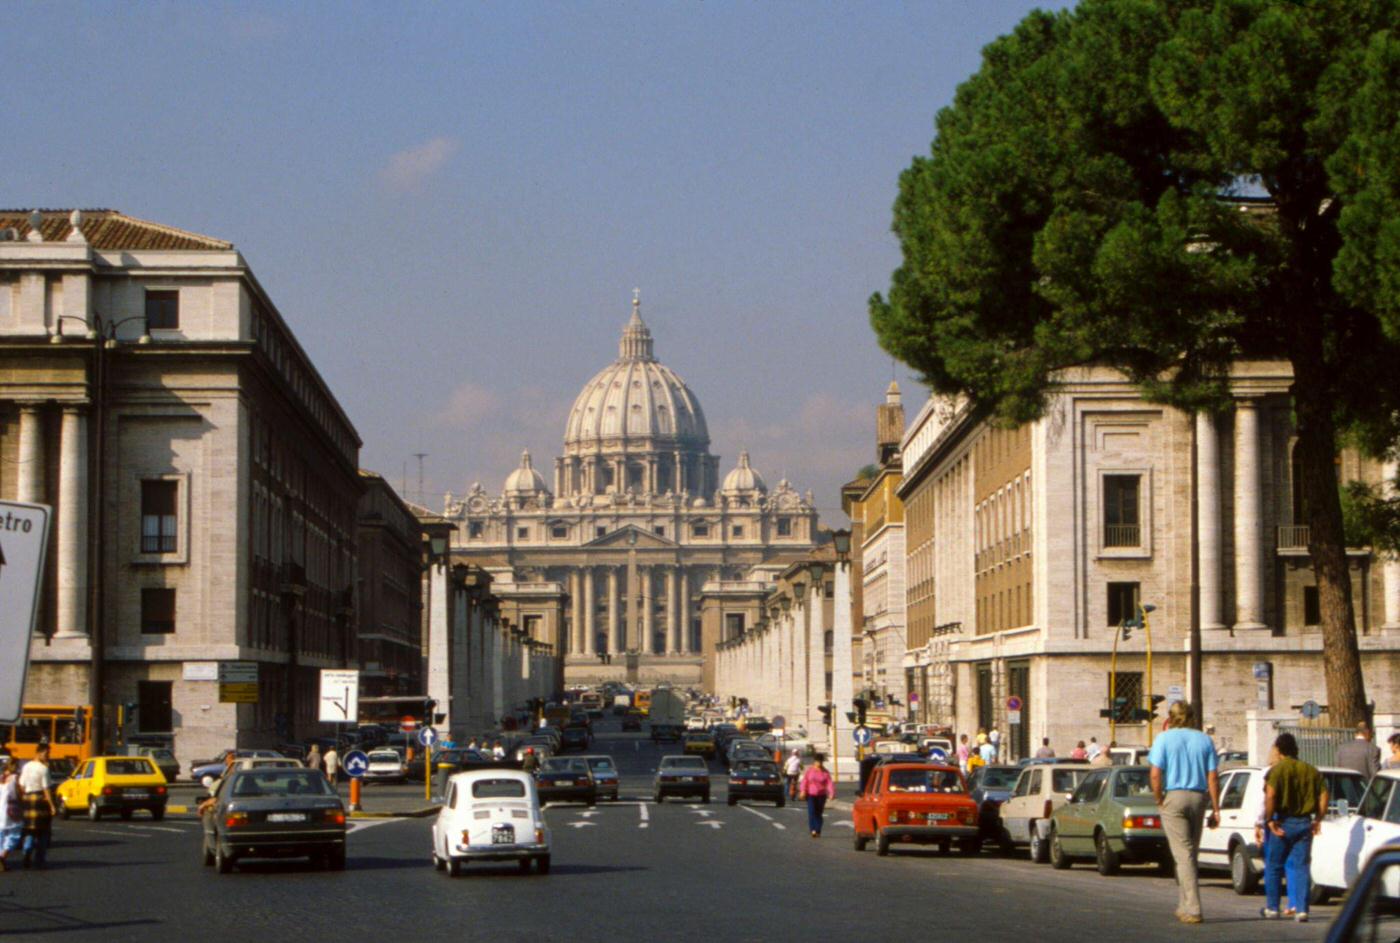 View of St. Peter's Basilica and Via della Conciliazione, Rome, 1980s